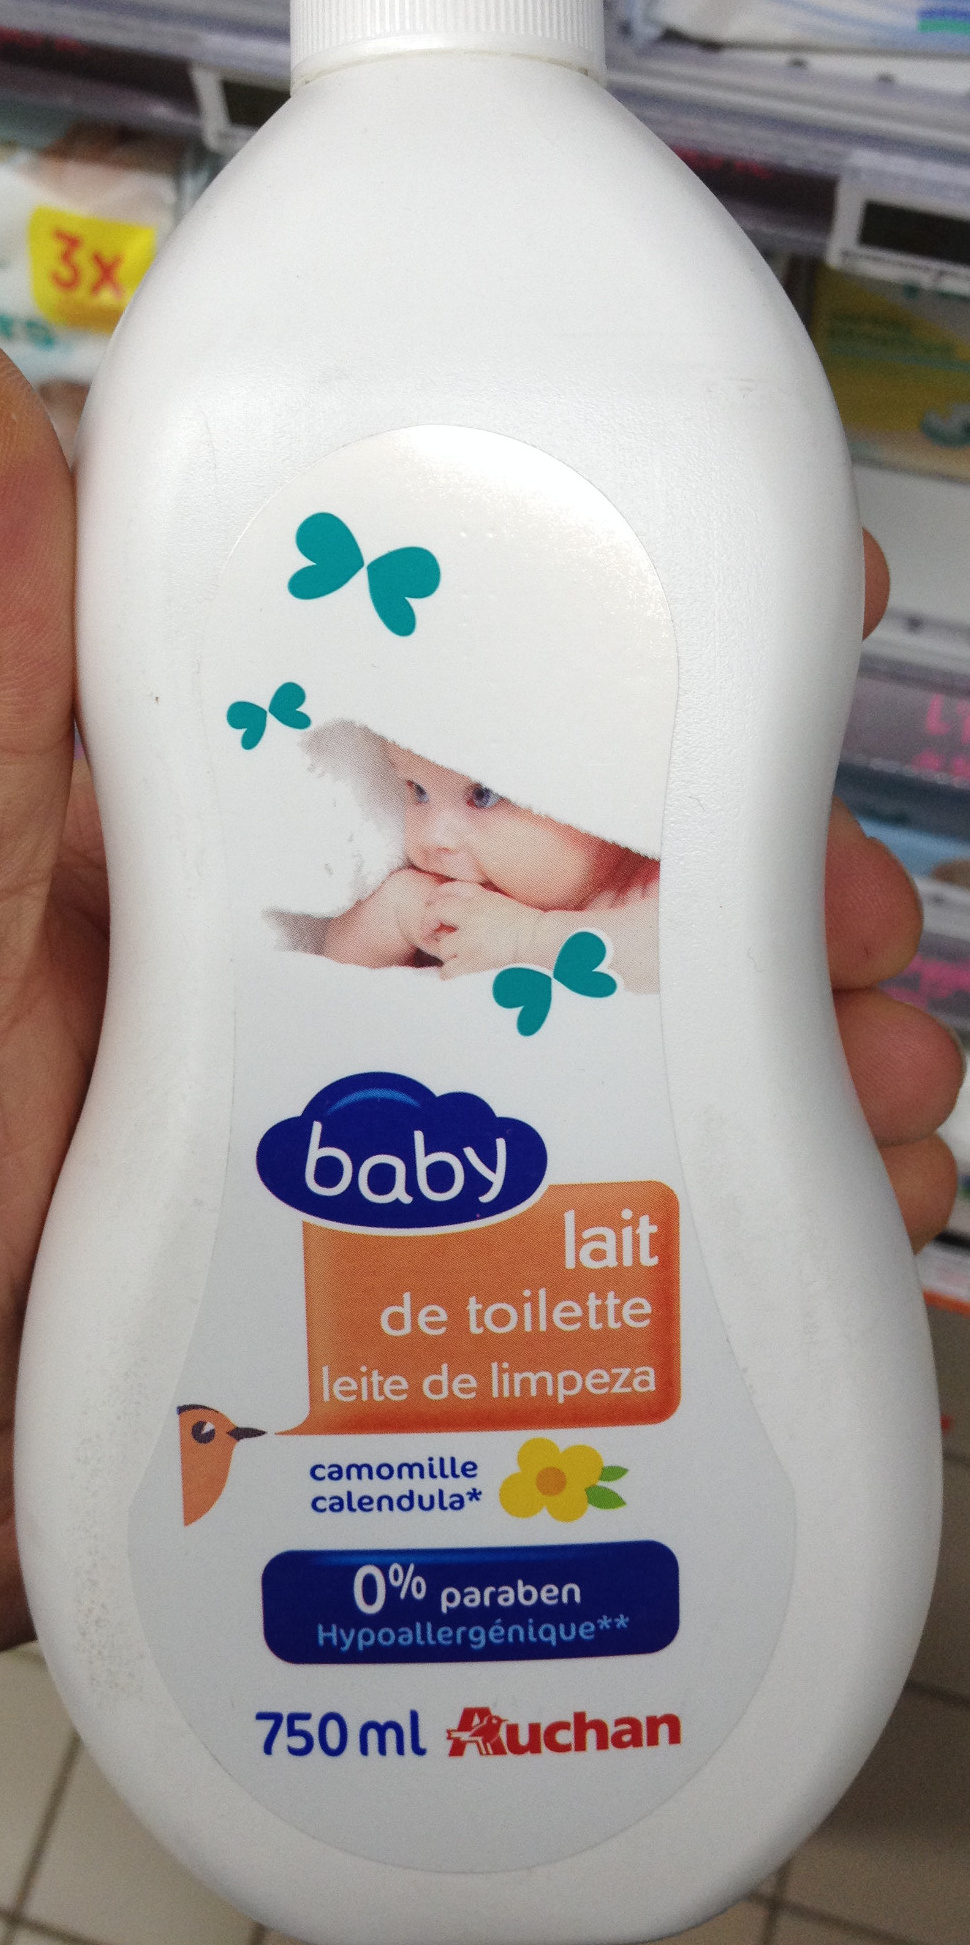 Lait de toilette baby camomille - Tuote - fr